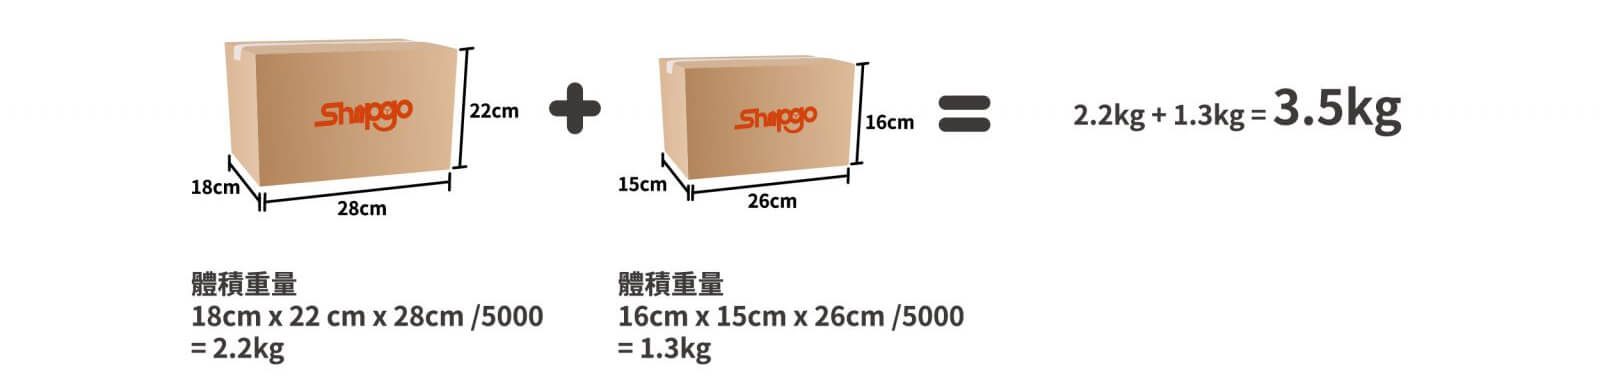 個別包裹計價模式_Shipgo國際代運